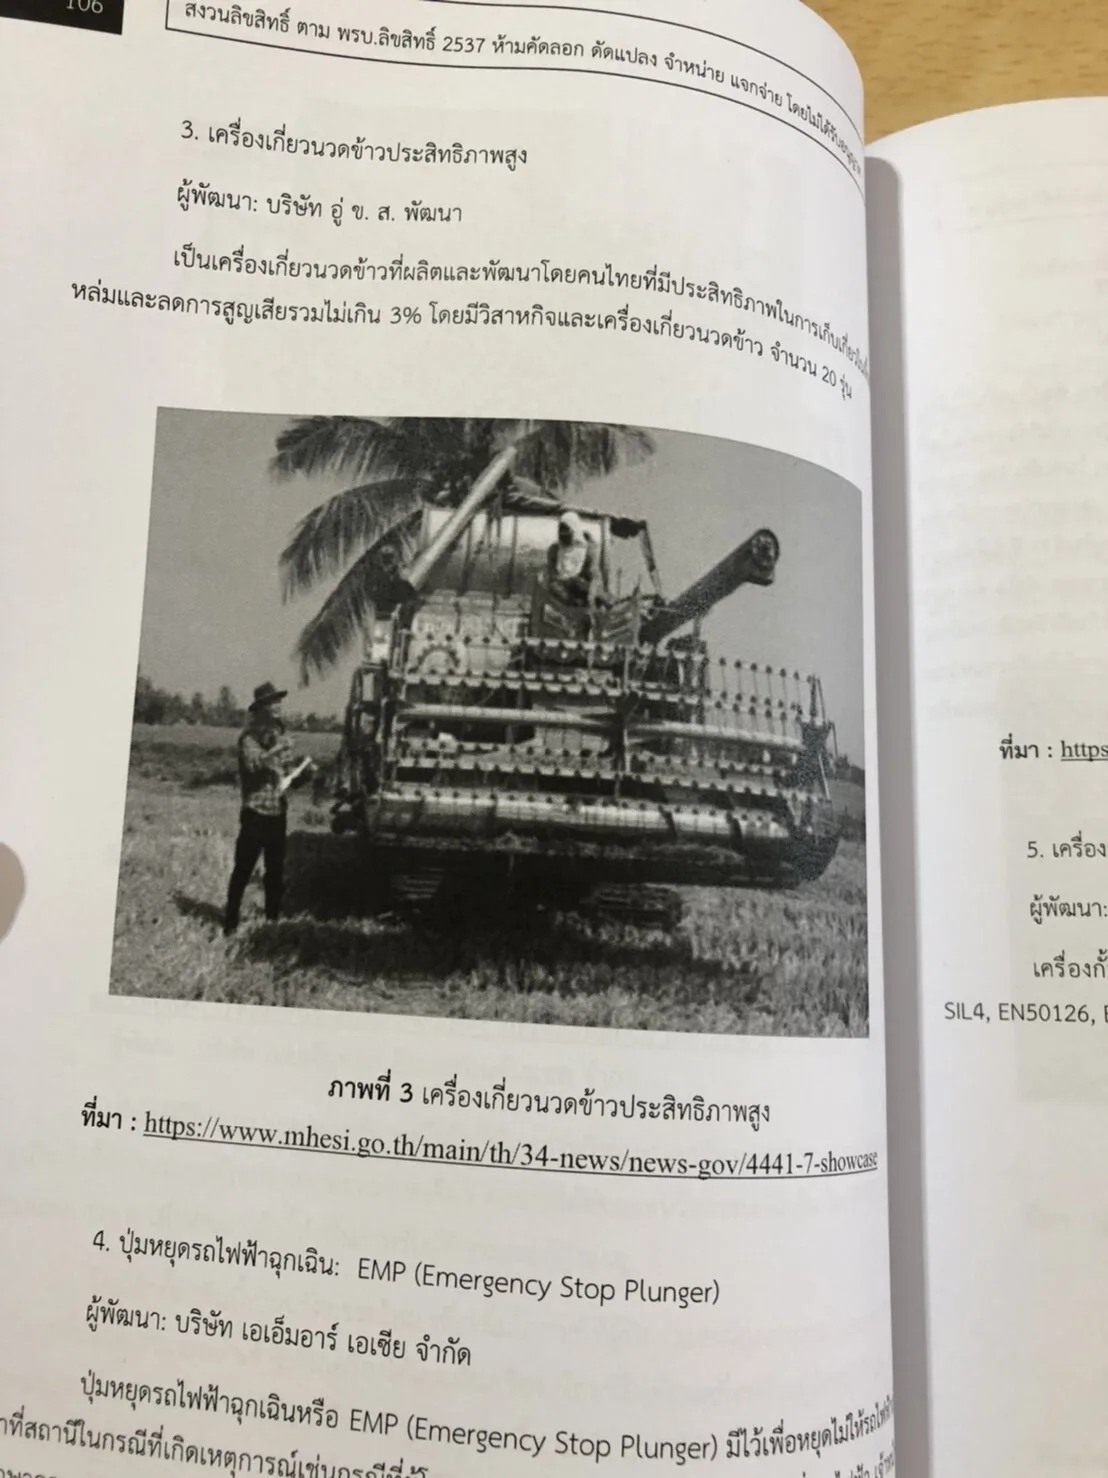 ตัวอย่างเนื้อหา ลูกจ้างเหมาบริการ กรมการปกครอง กระทรวงมหาดไทย